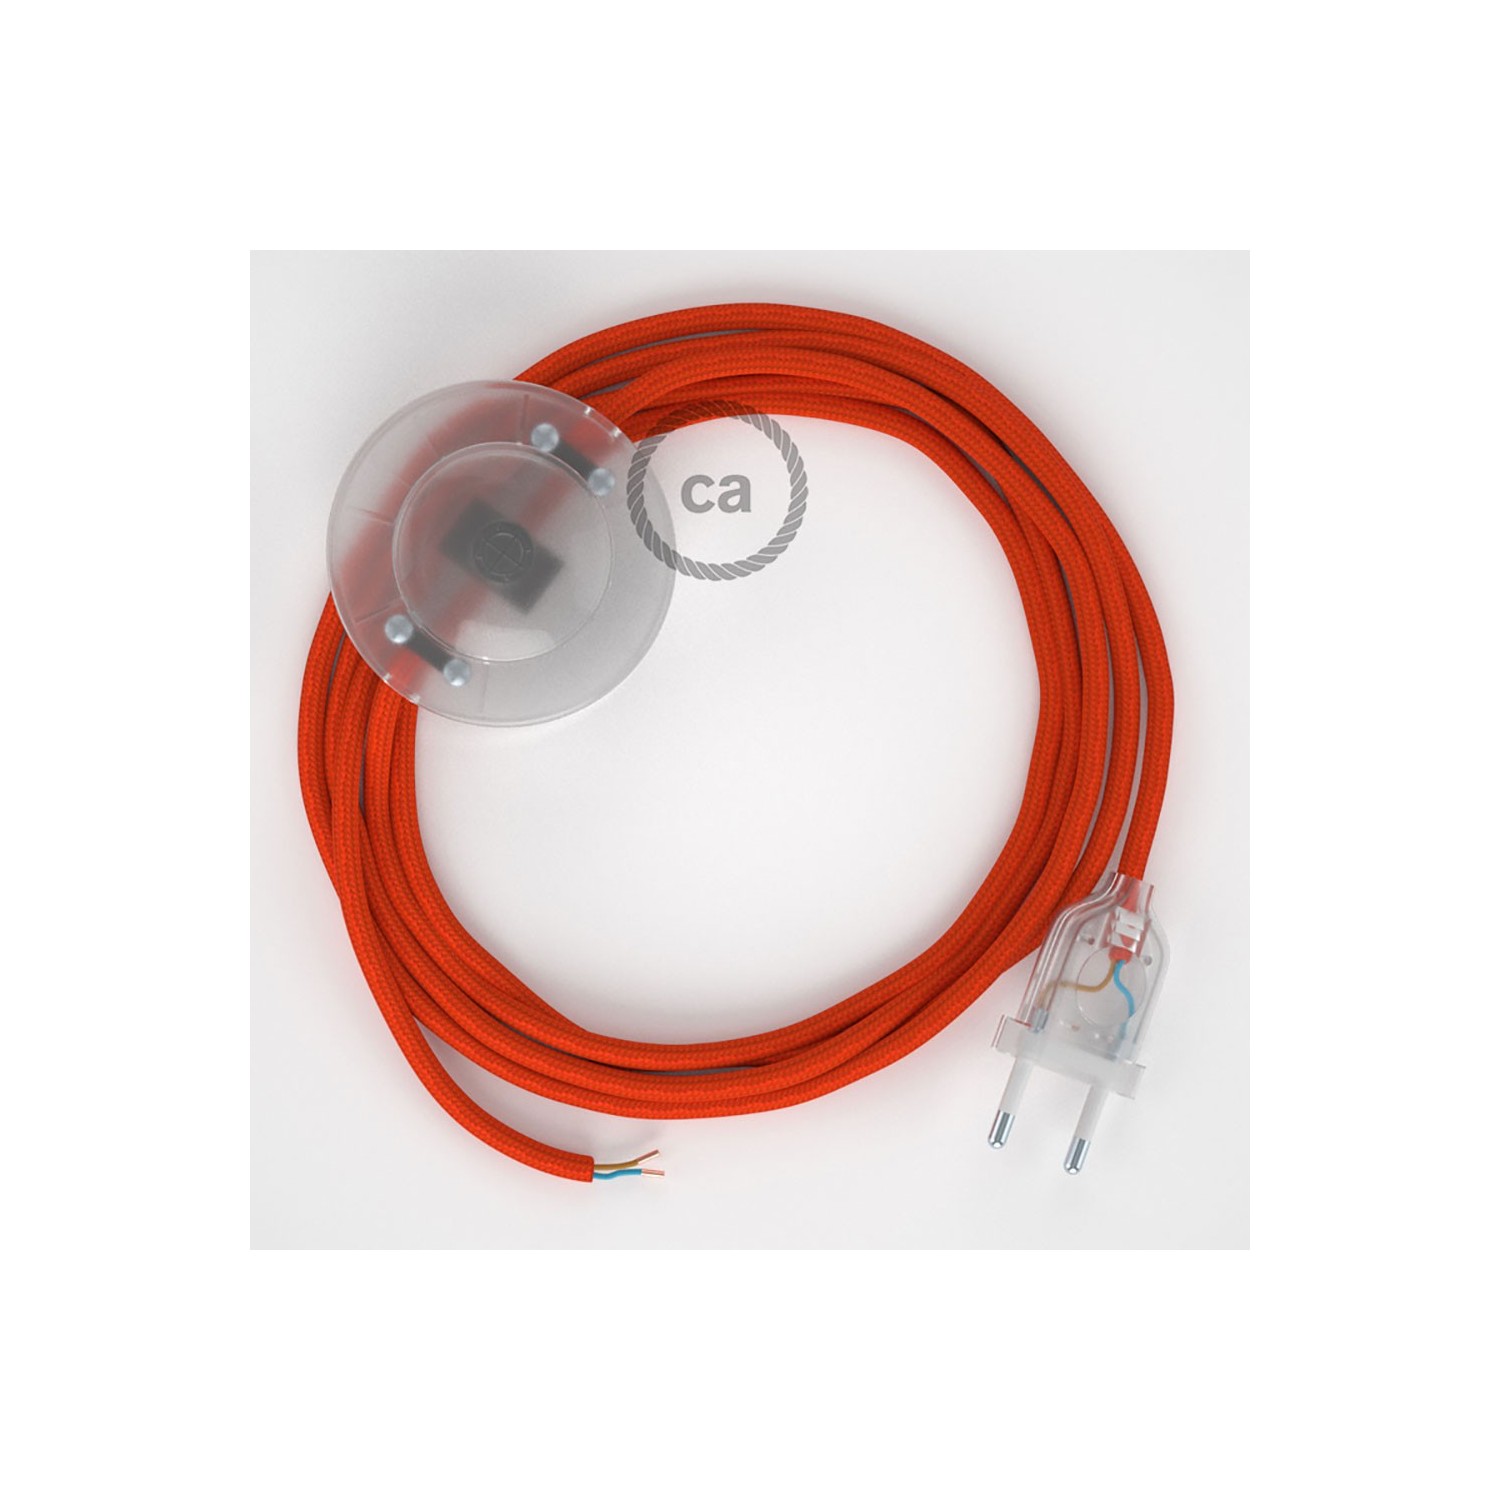 Cordon pour lampadaire, câble RM15 Effet Soie Orange 3 m. Choisissez la couleur de la fiche et de l'interrupteur!